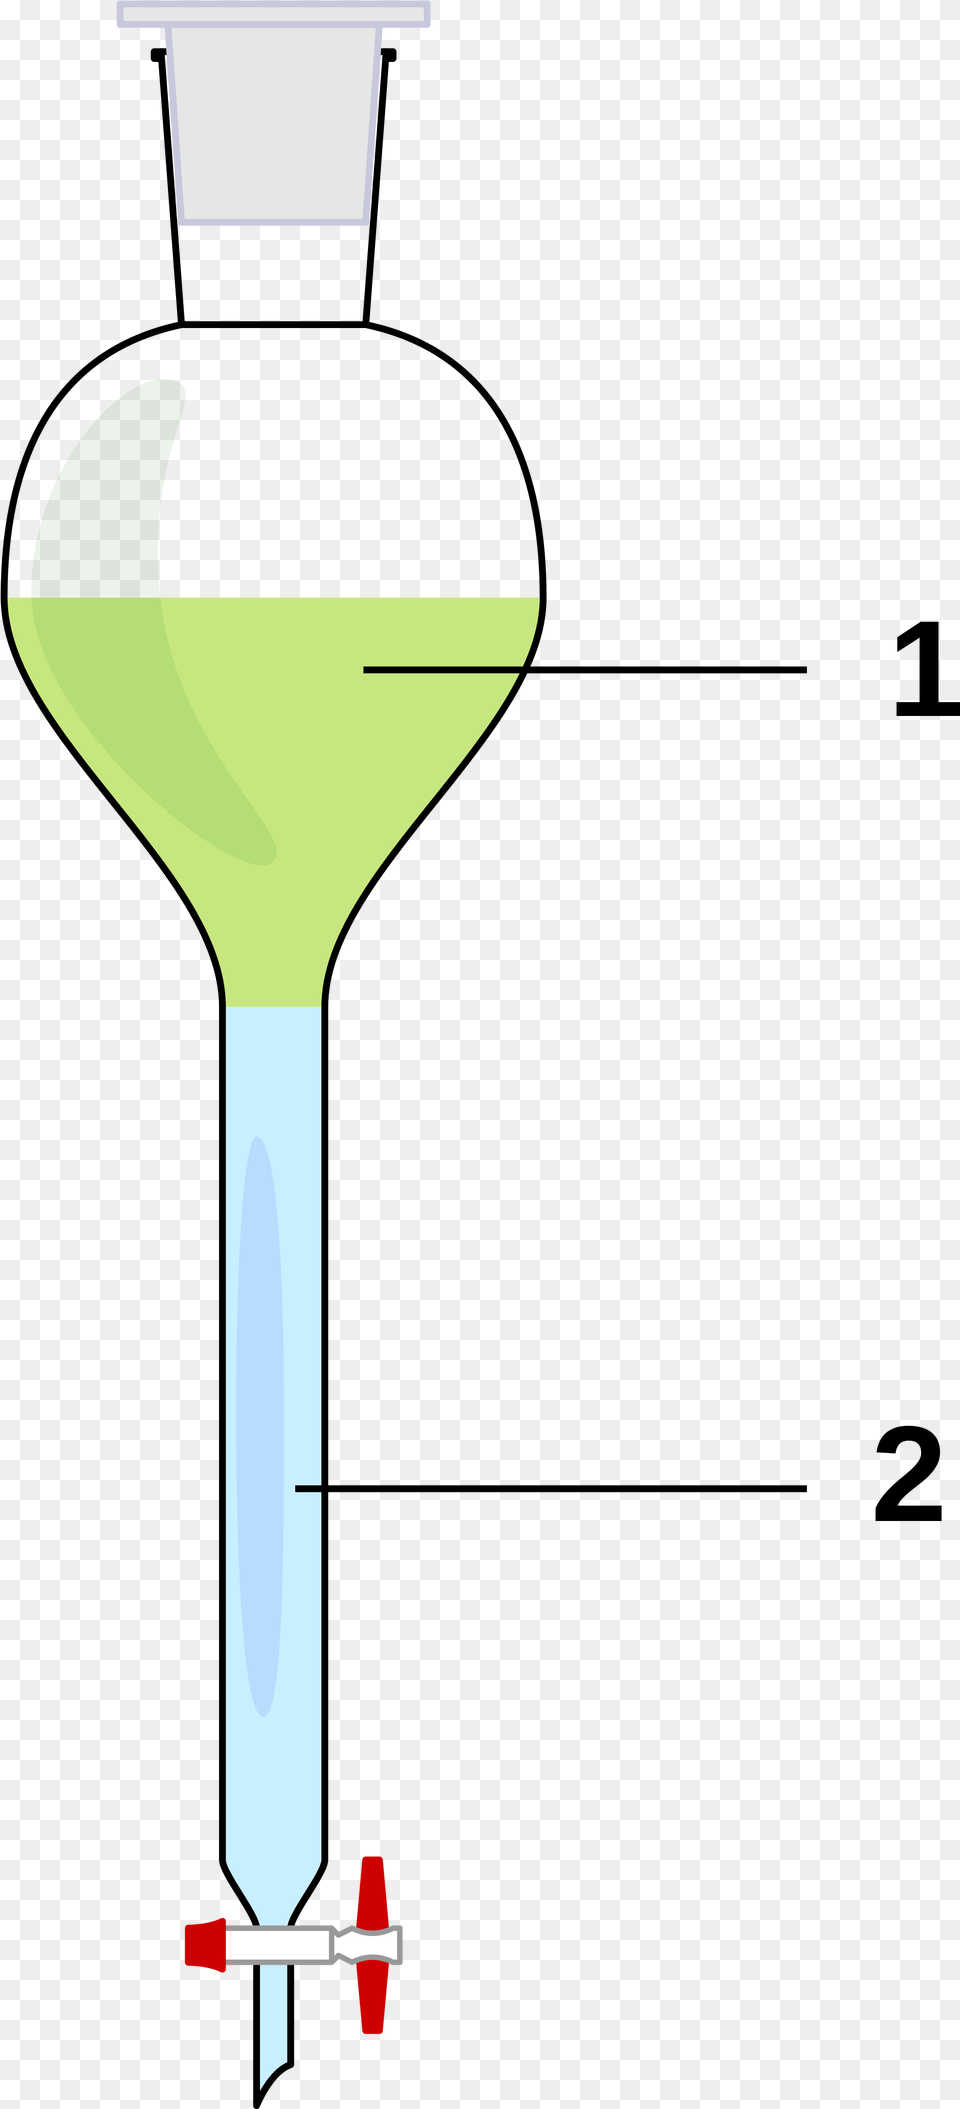 Open Lijevak Za Odjeljivanje, Alcohol, Beverage, Cocktail, Chart Png Image